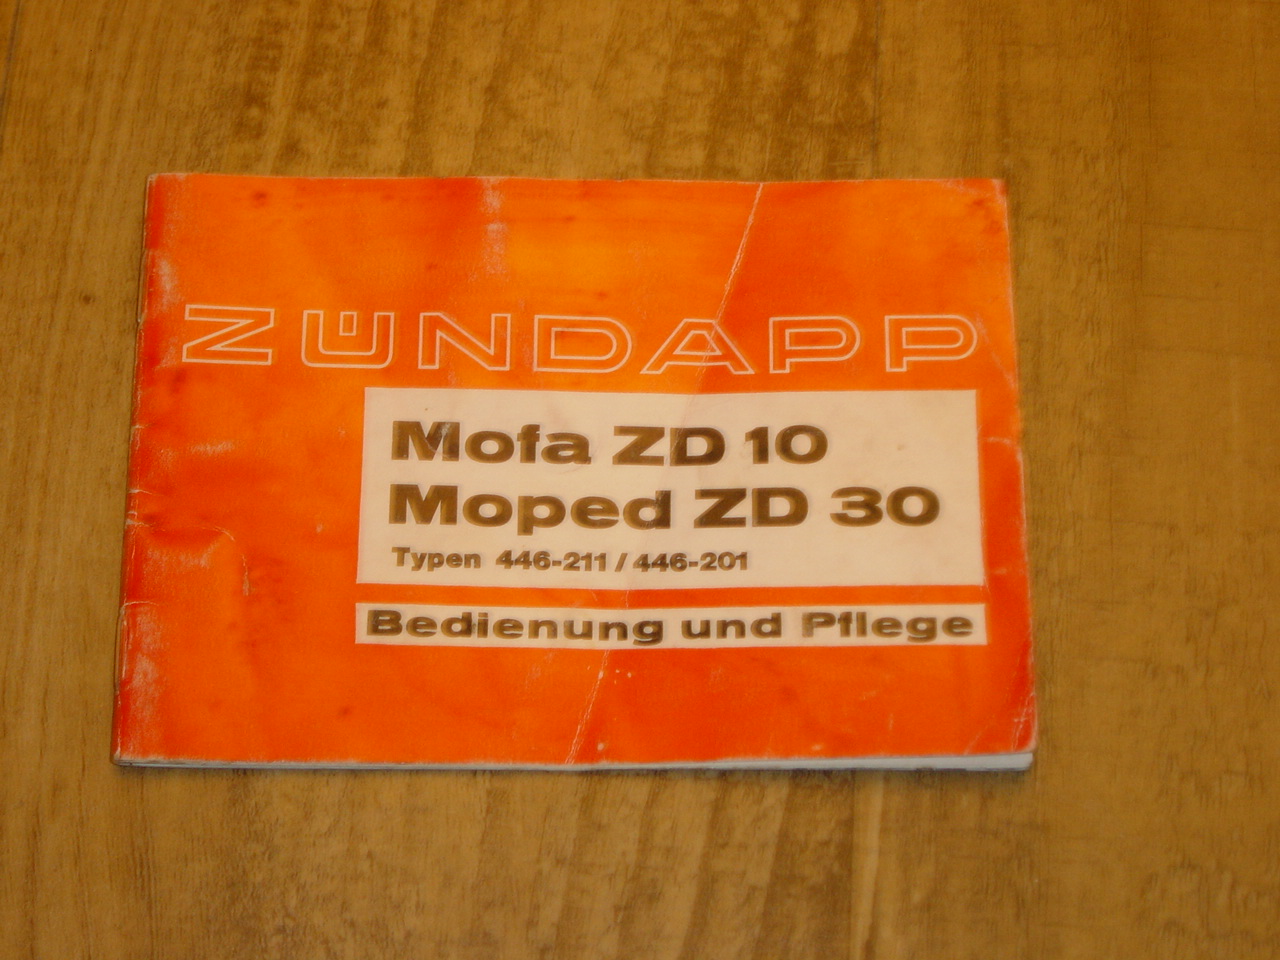 User manual D - 446 - Mofa ZD 10  , Moped ZD 30